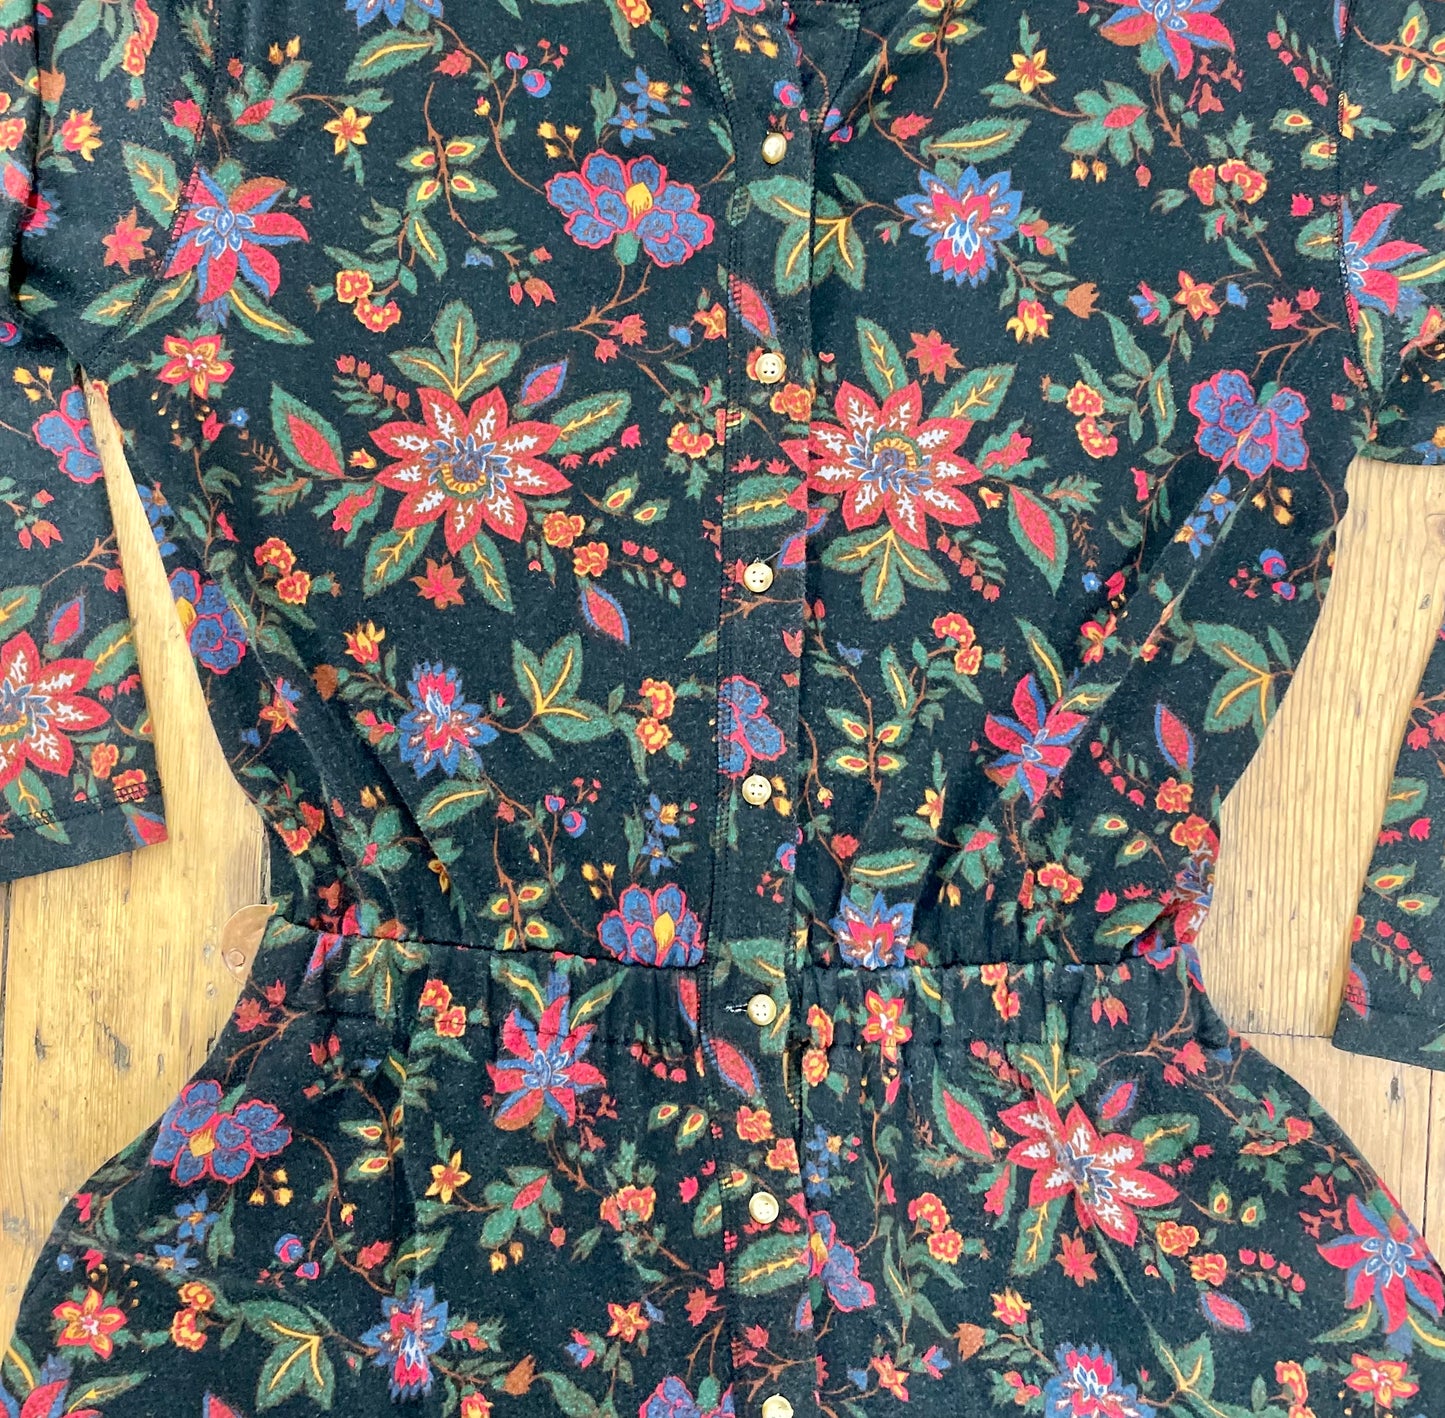 Eddie Bauer Jersey Maxi-Dress with Floral Pattern [1990s, medium]